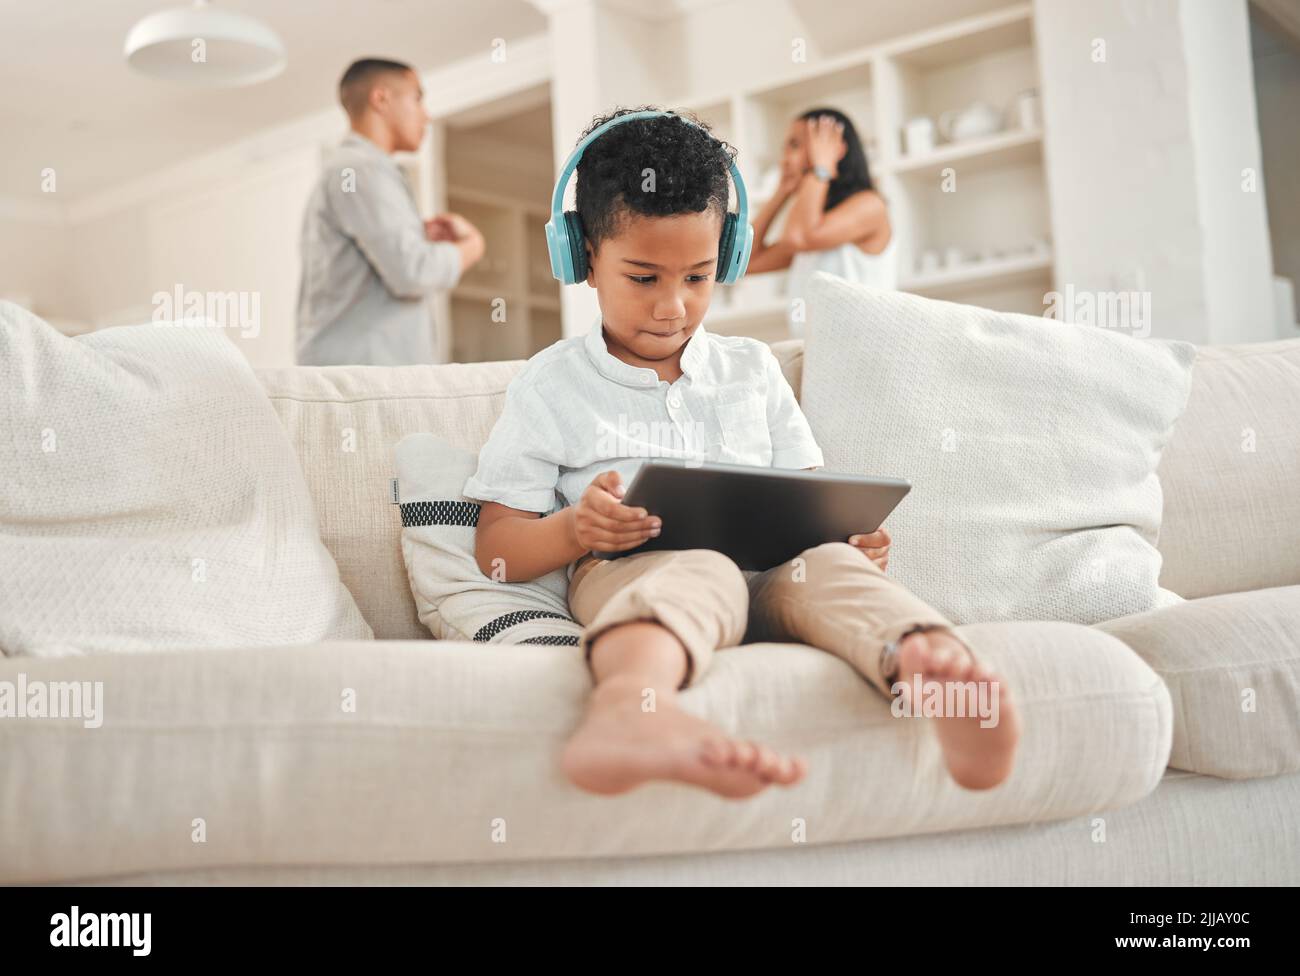 Hai fallito la tua famiglia. Un ragazzino che indossa una cuffia e usa un tablet digitale mentre i genitori discutono in background a casa. Foto Stock